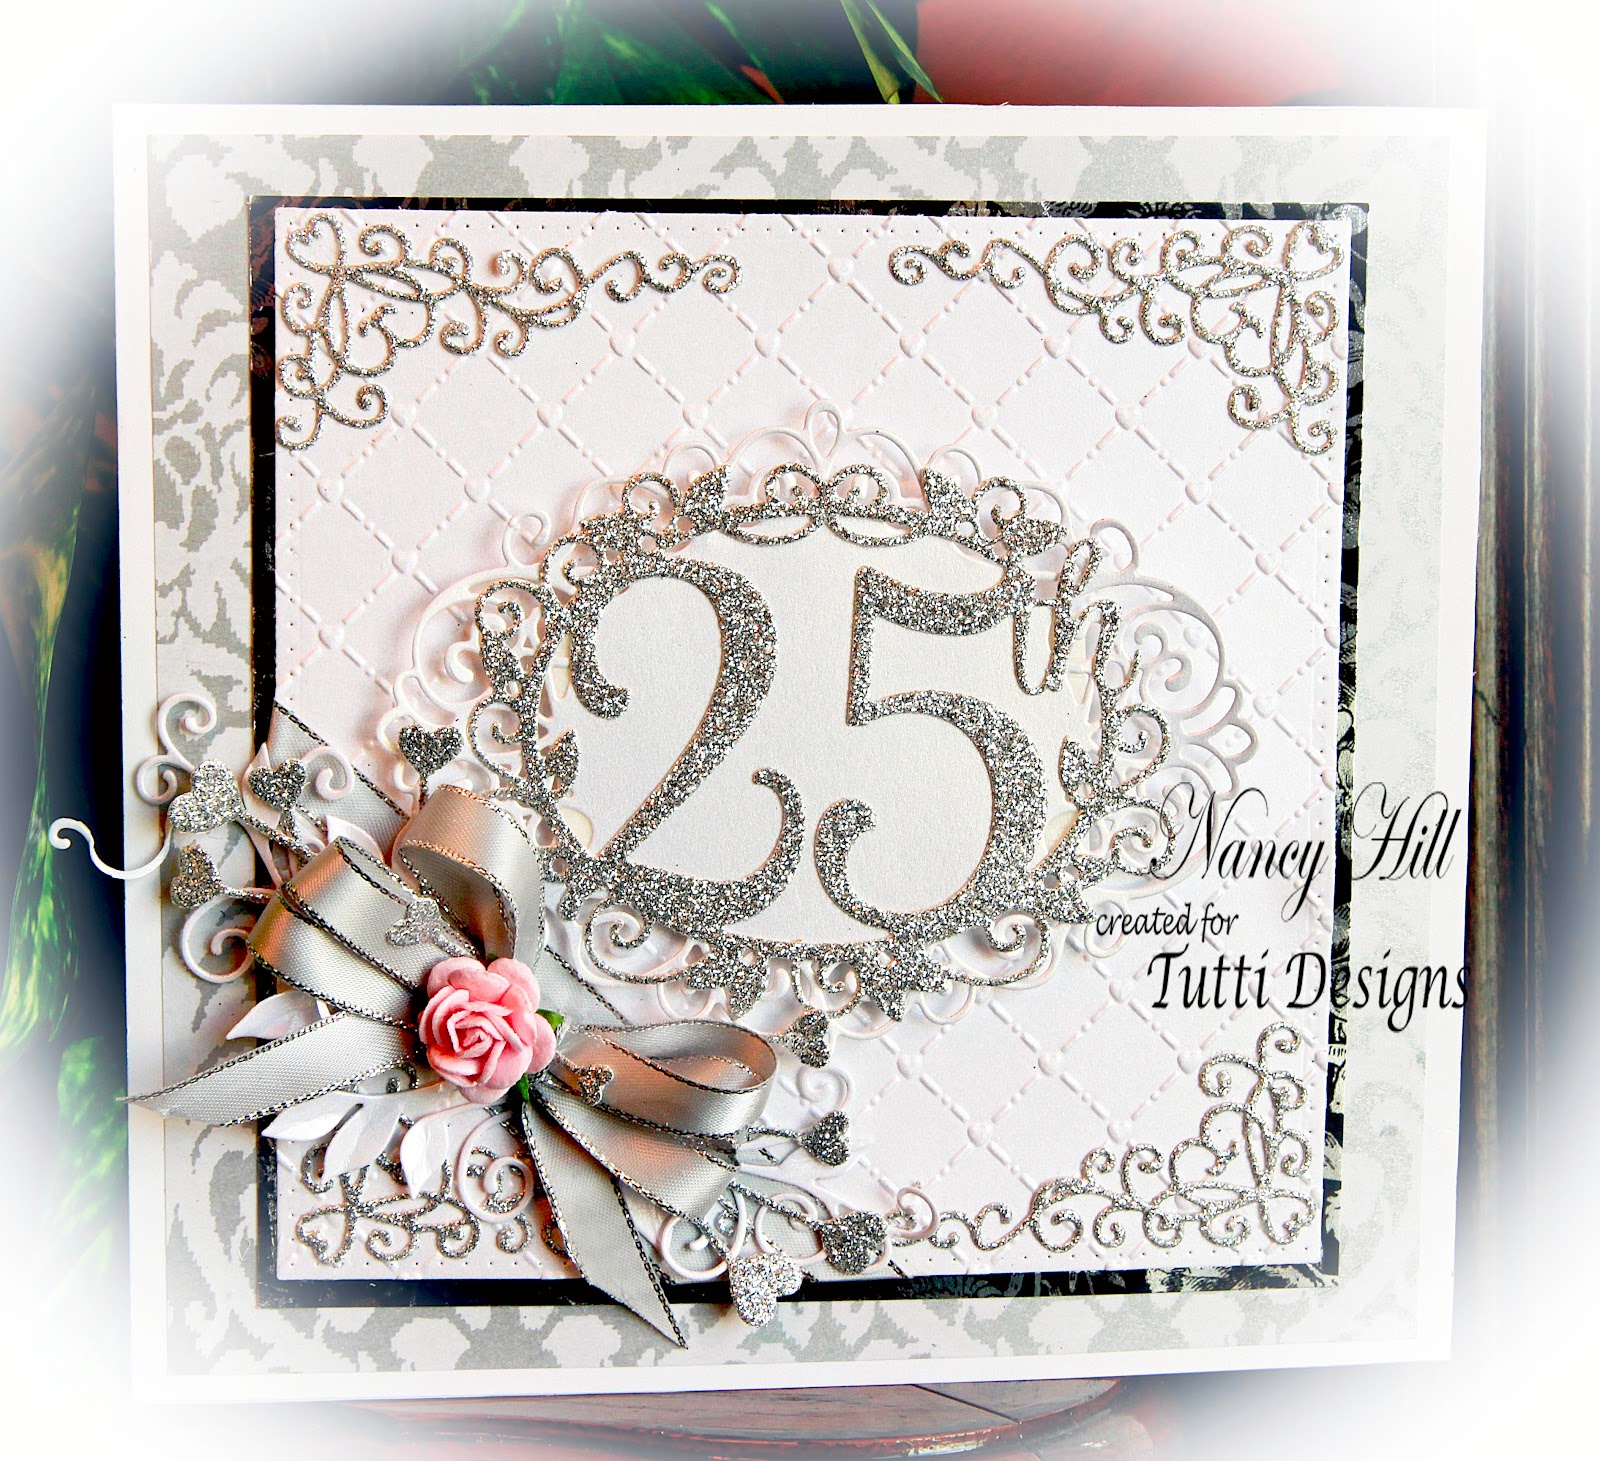 tutti-designs-25th-anniversary-card